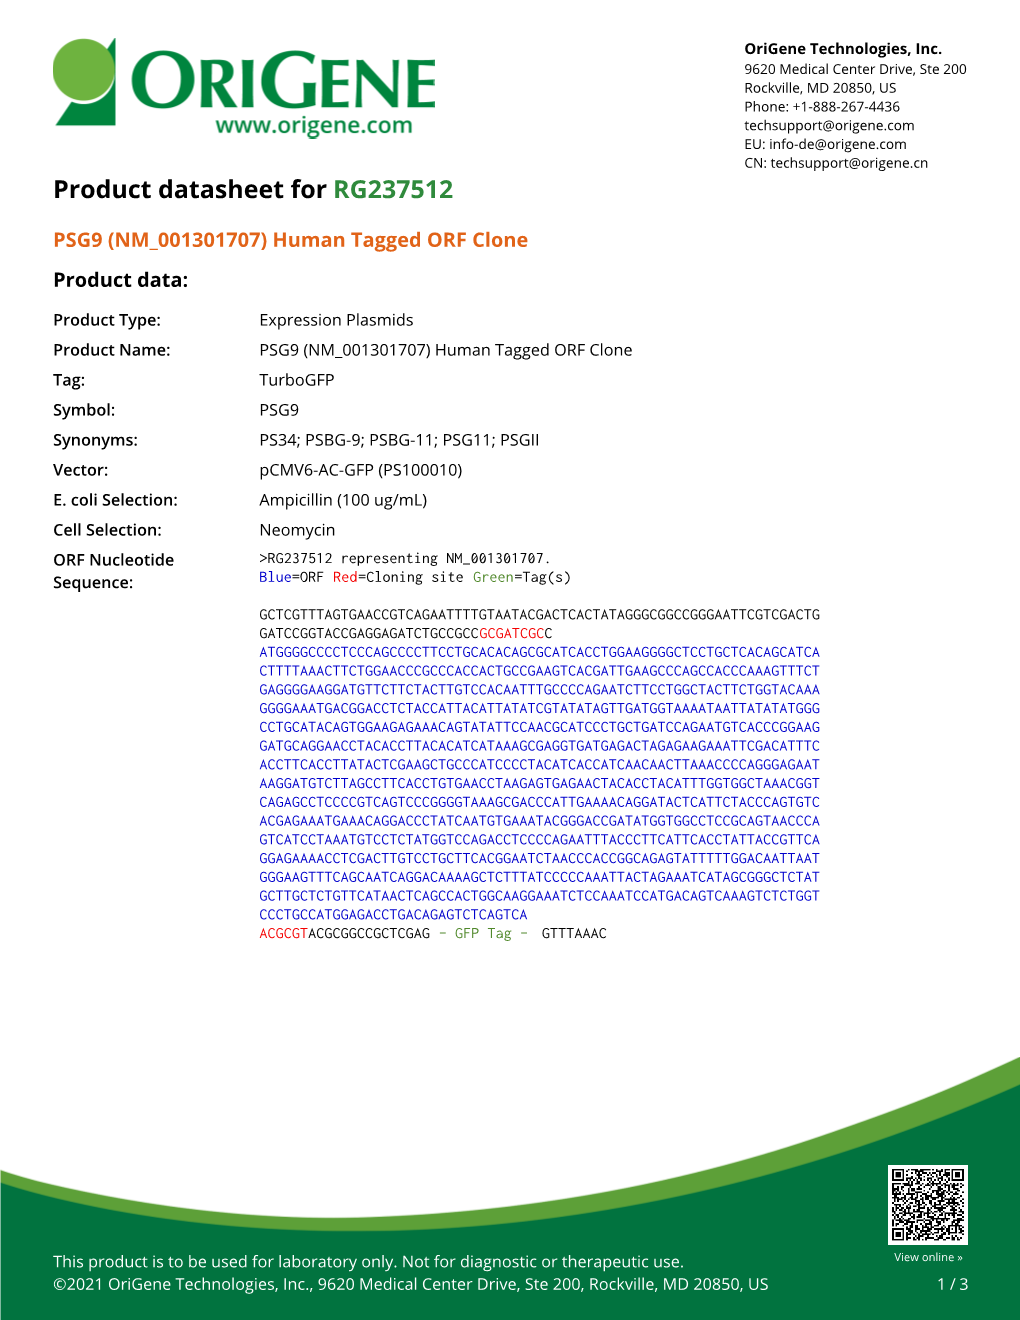 PSG9 (NM 001301707) Human Tagged ORF Clone – RG237512